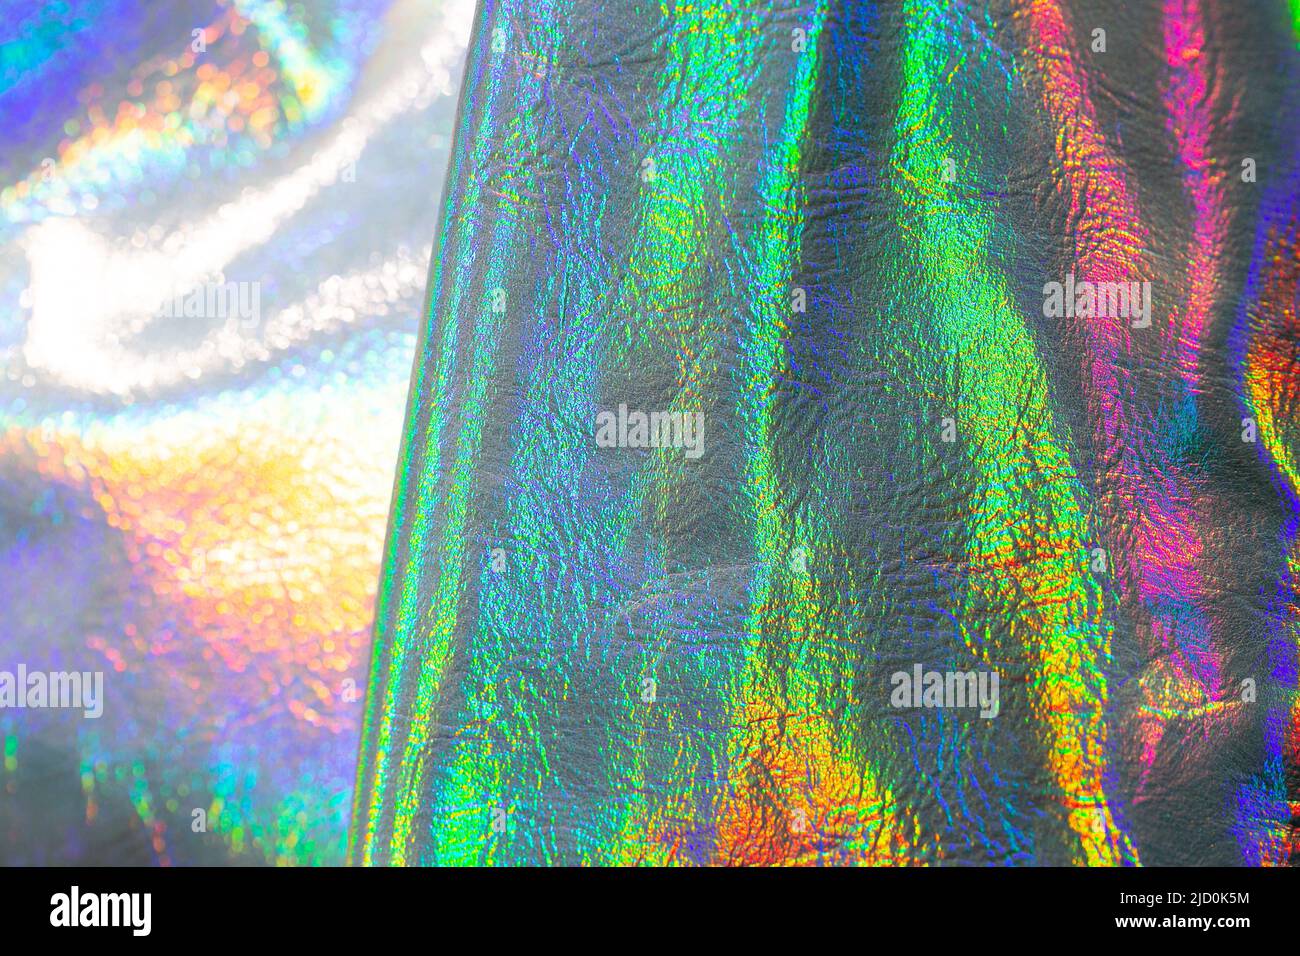 Holografische Tapete in Silber, Lila und Grün. Textur mit schillernden Wellen und folds.beautiful metallisch glänzendem Stoff. Trendige holografische Stockfoto